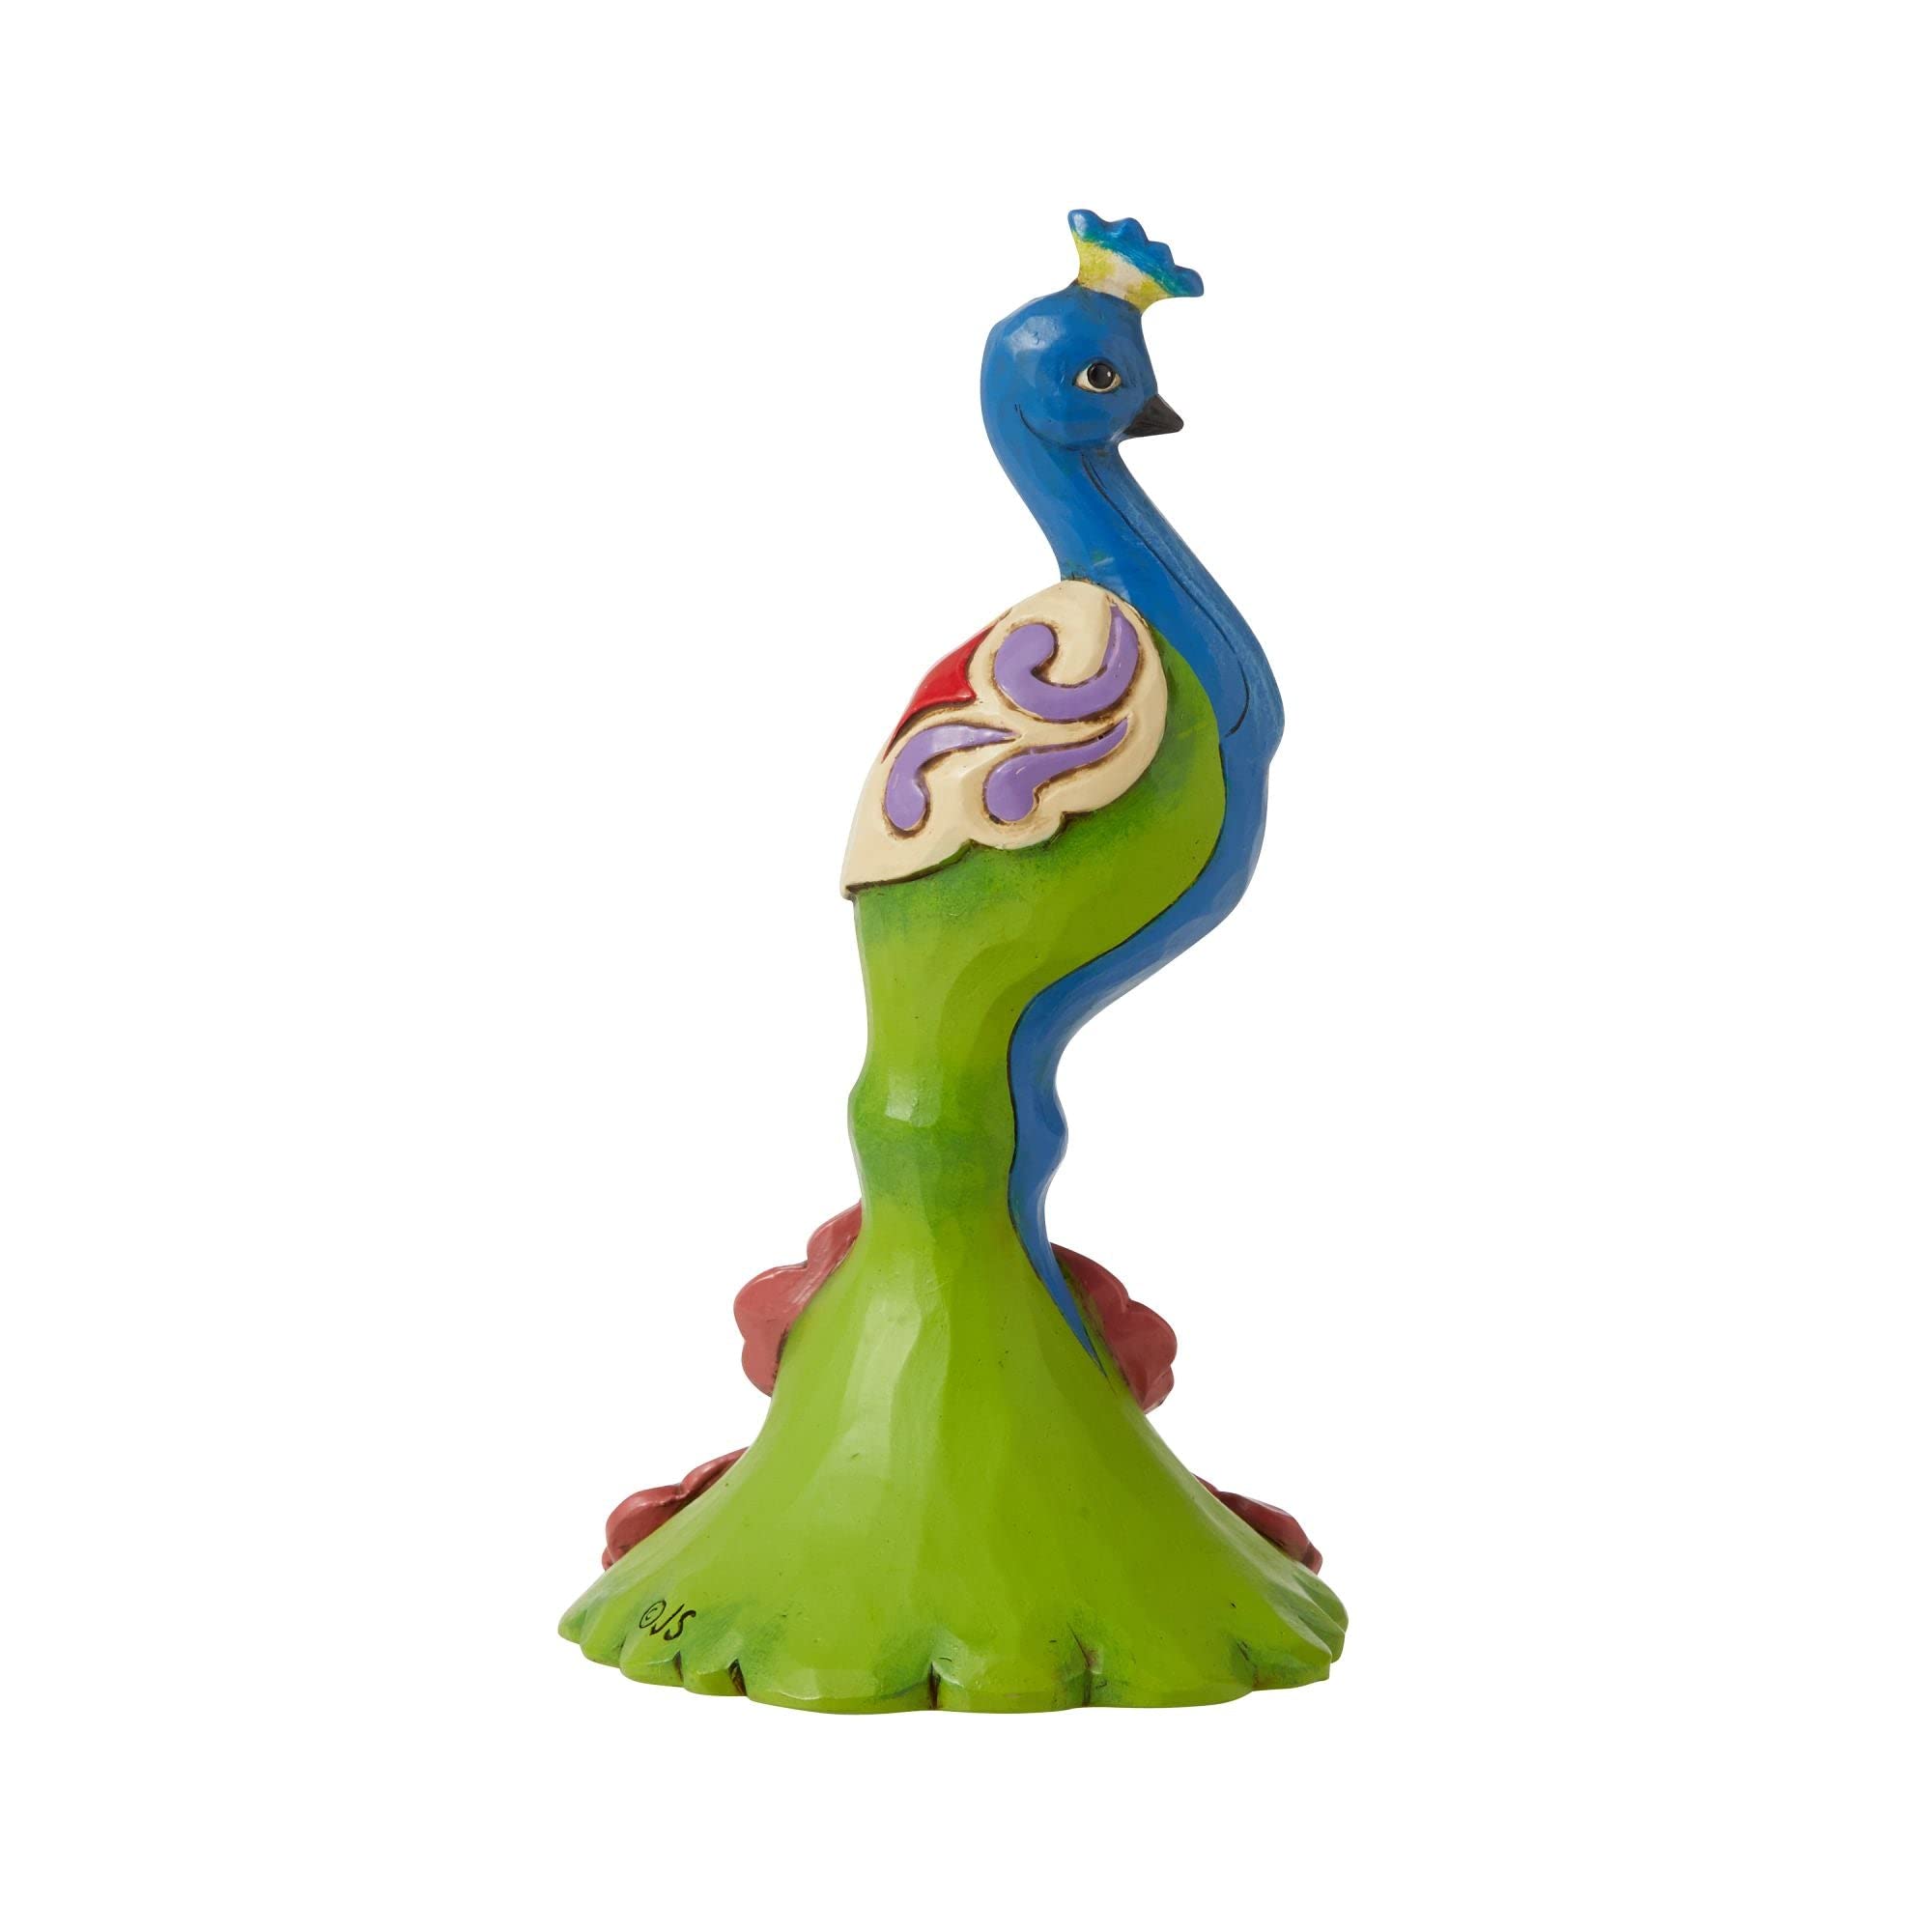 Enesco Jim Shore Mini Peacock Figurine, 5 inches